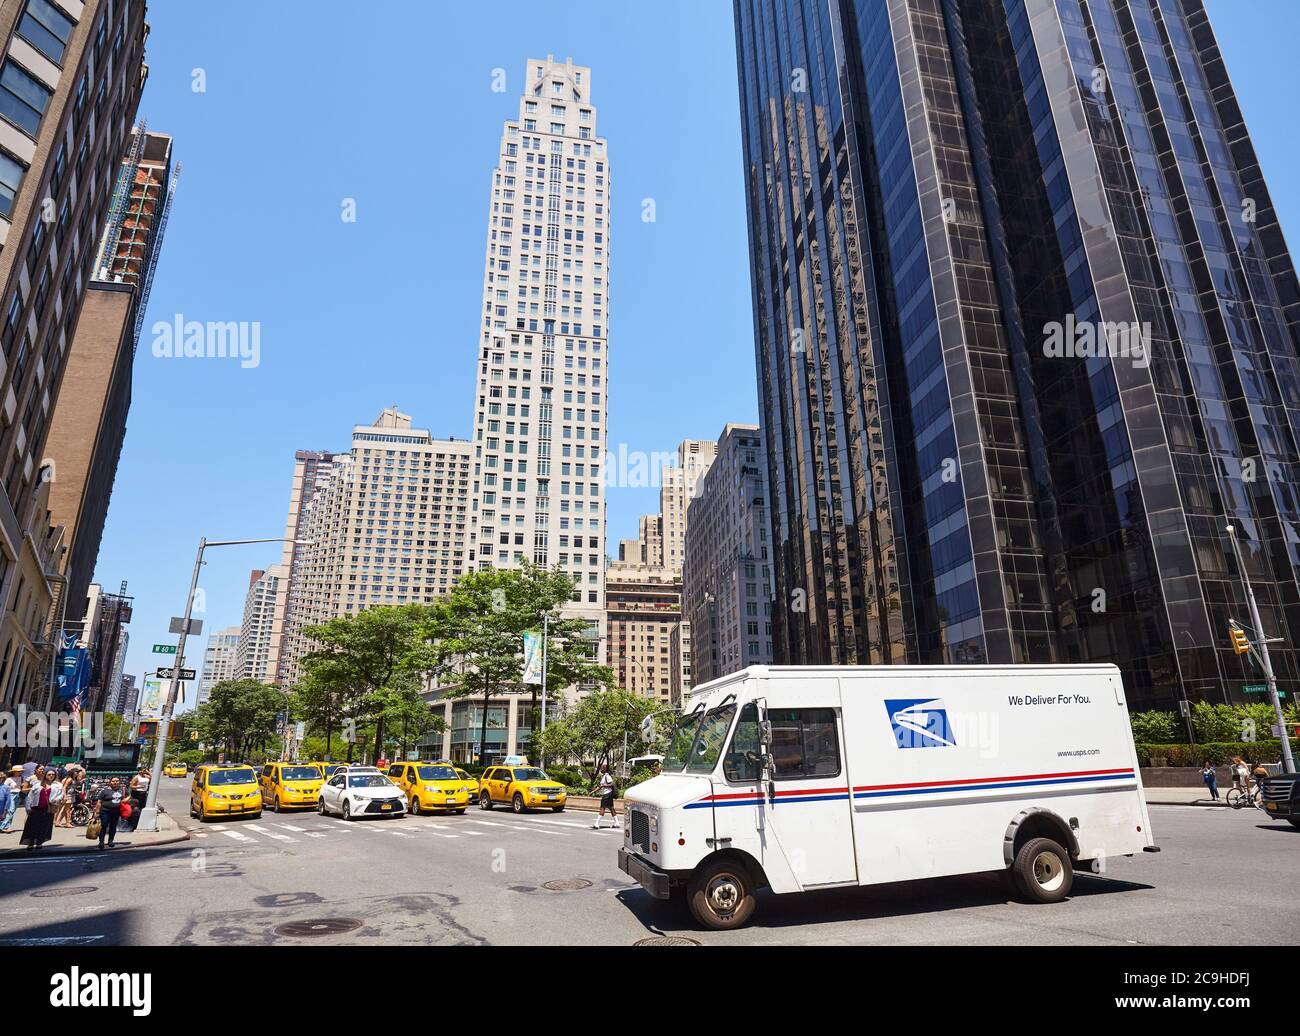 New York, USA - 30 juin 2018 : camion du United States postal Service (USPS) à l'intersection de Broadway et West 60th Street. Banque D'Images